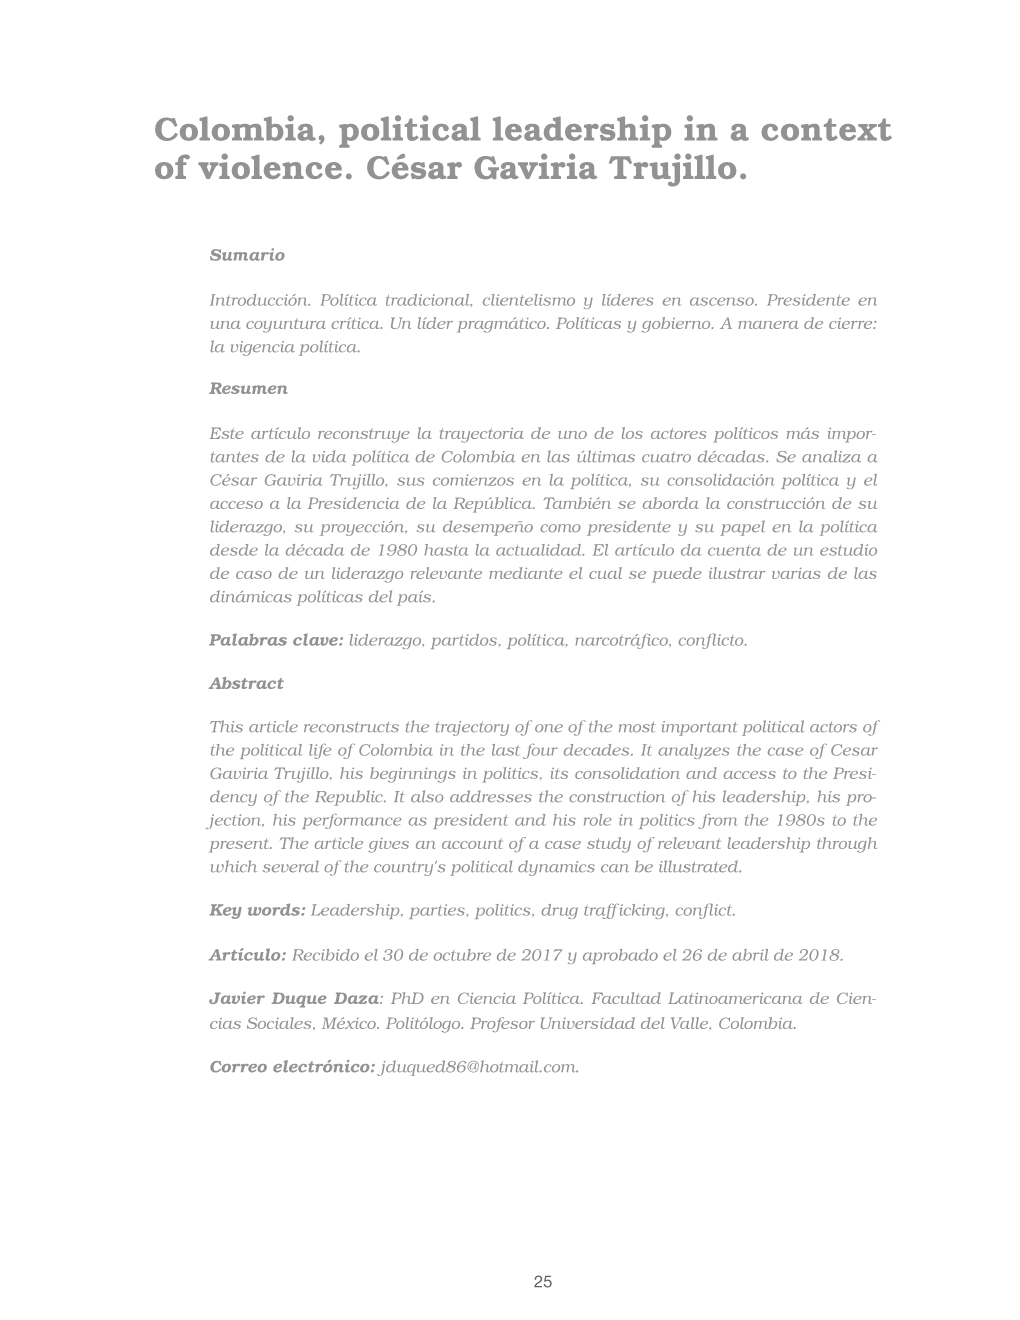 Colombia, Political Leadership in a Context of Violence. César Gaviria Trujillo